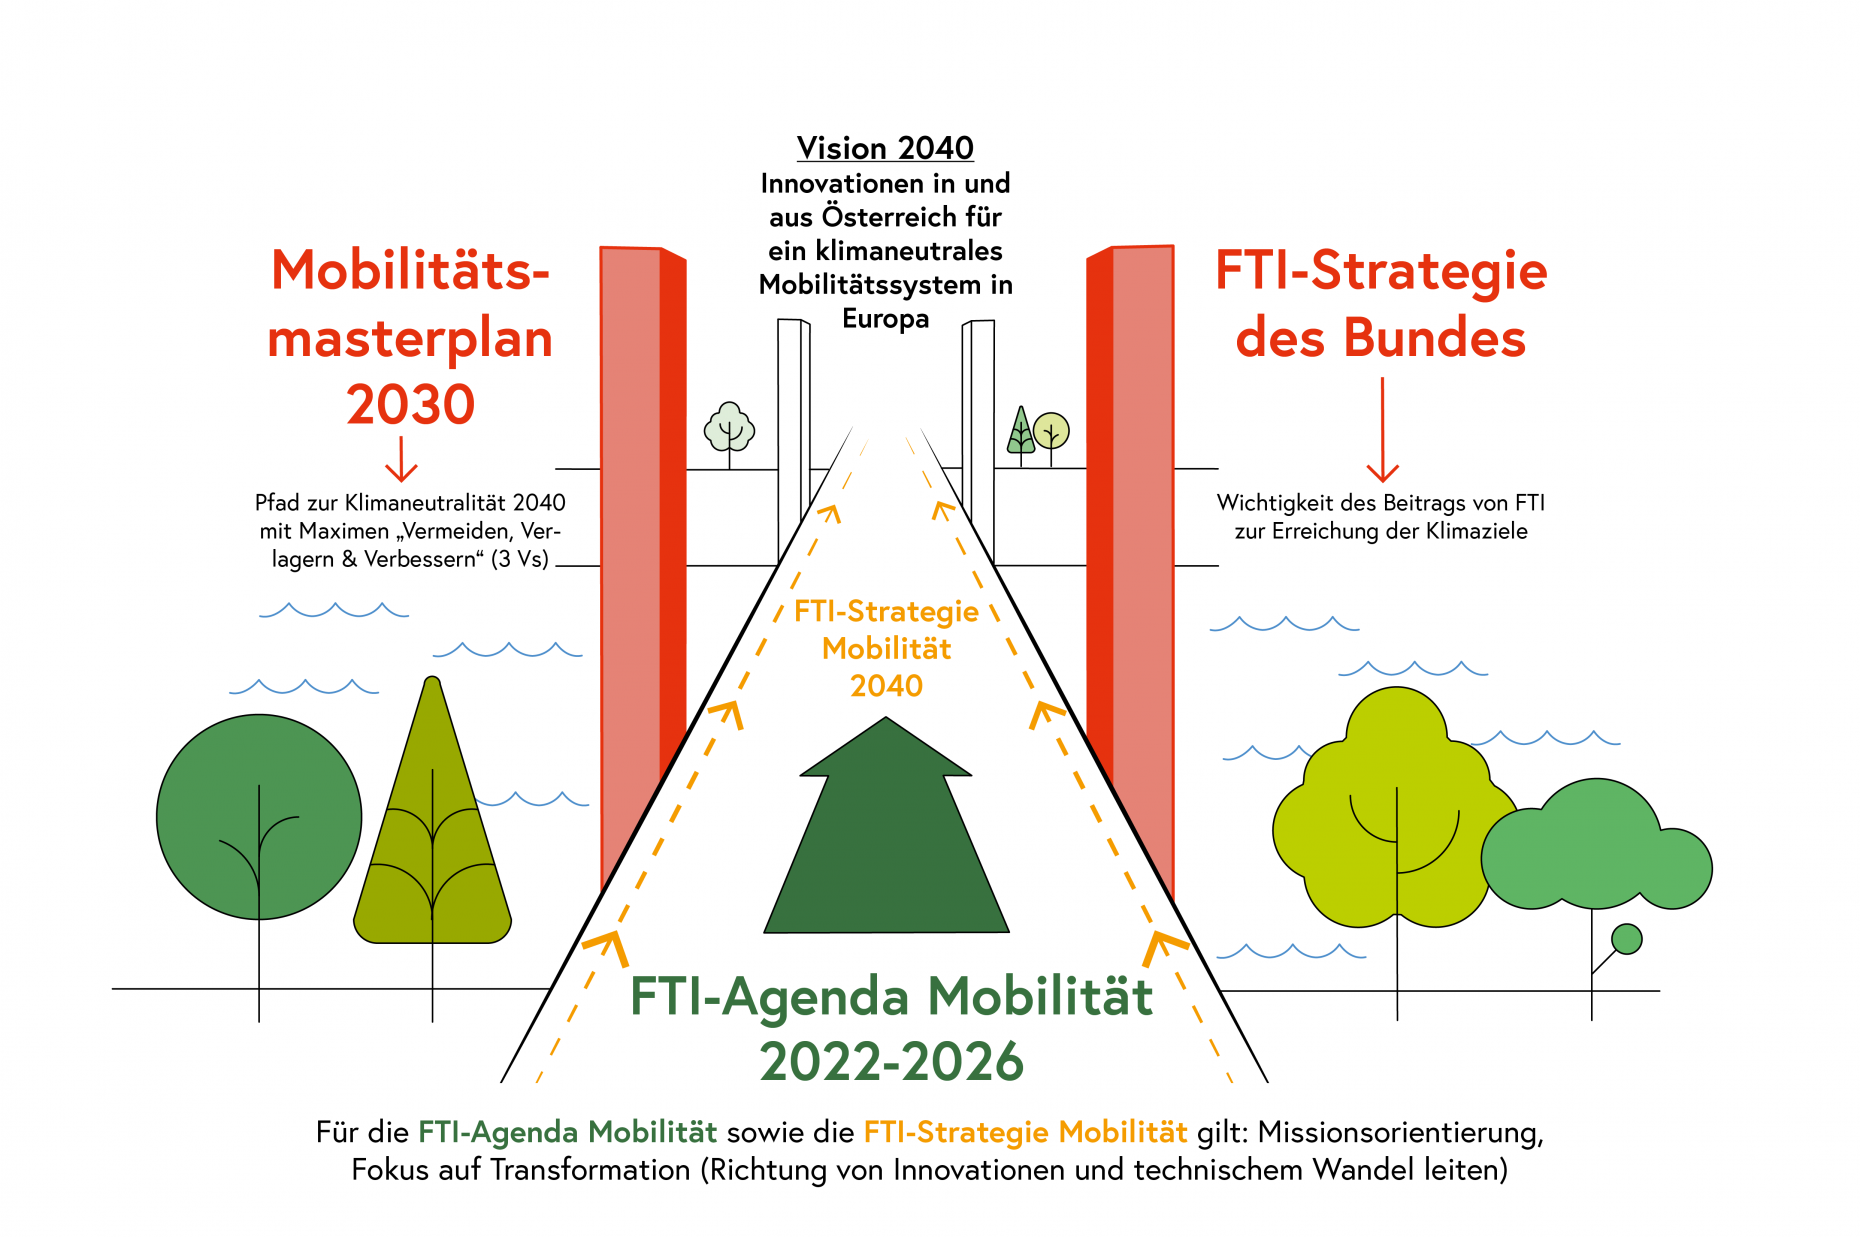 Die FTI-Strategie 2030 des Bundes und der Mobilitätsmasterplan sind die beiden Säulen, auf denen die FTI-Strategie Mobilität 2040 und die FTI-Agenda Mobilität 2026 ruhen. die FTI-Strategie Mobilität 2040 und die FTI-Agenda Mobilität 2026 verbinden die beiden Sektorpolitiken Mobilitätspolitik und FTI-Politik.